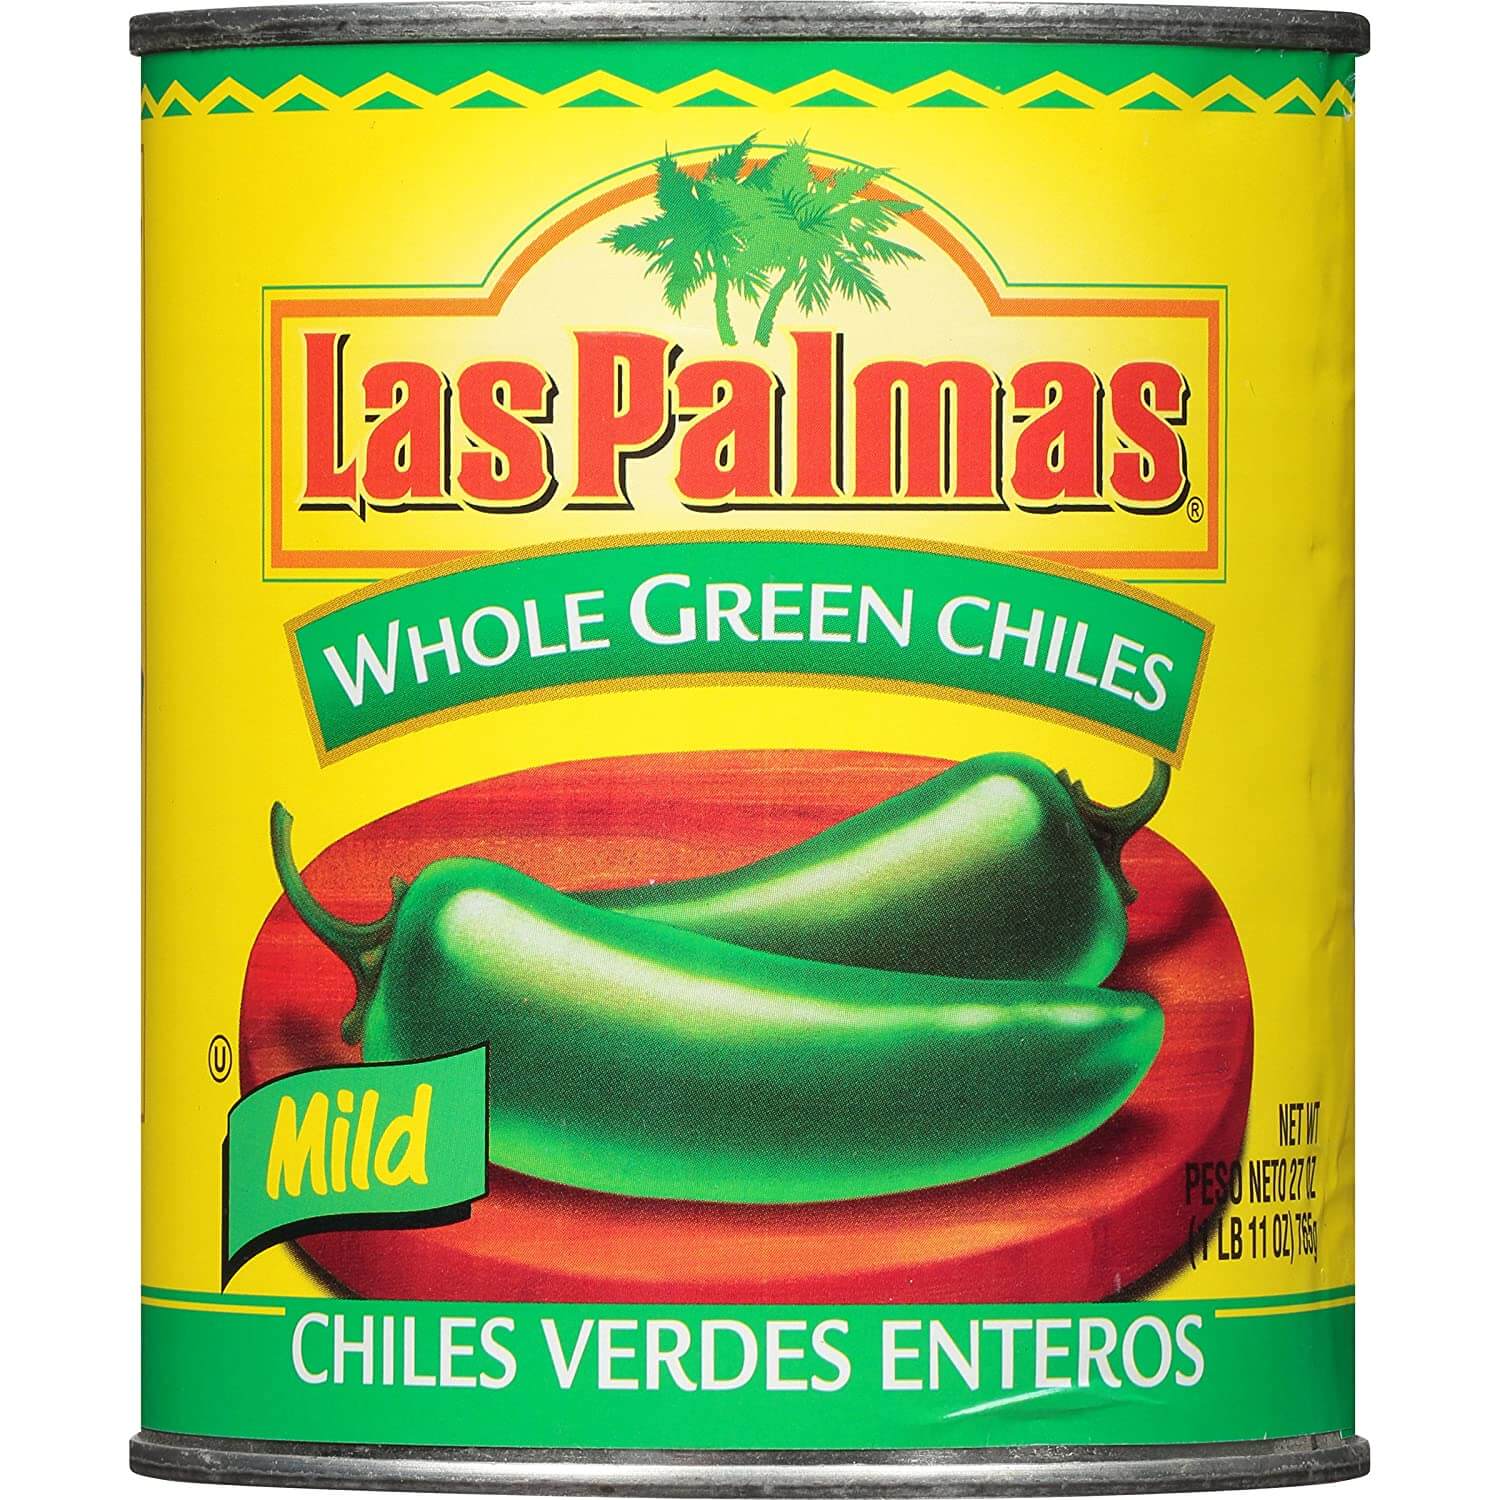 Las Palmas Whole Green Chilies